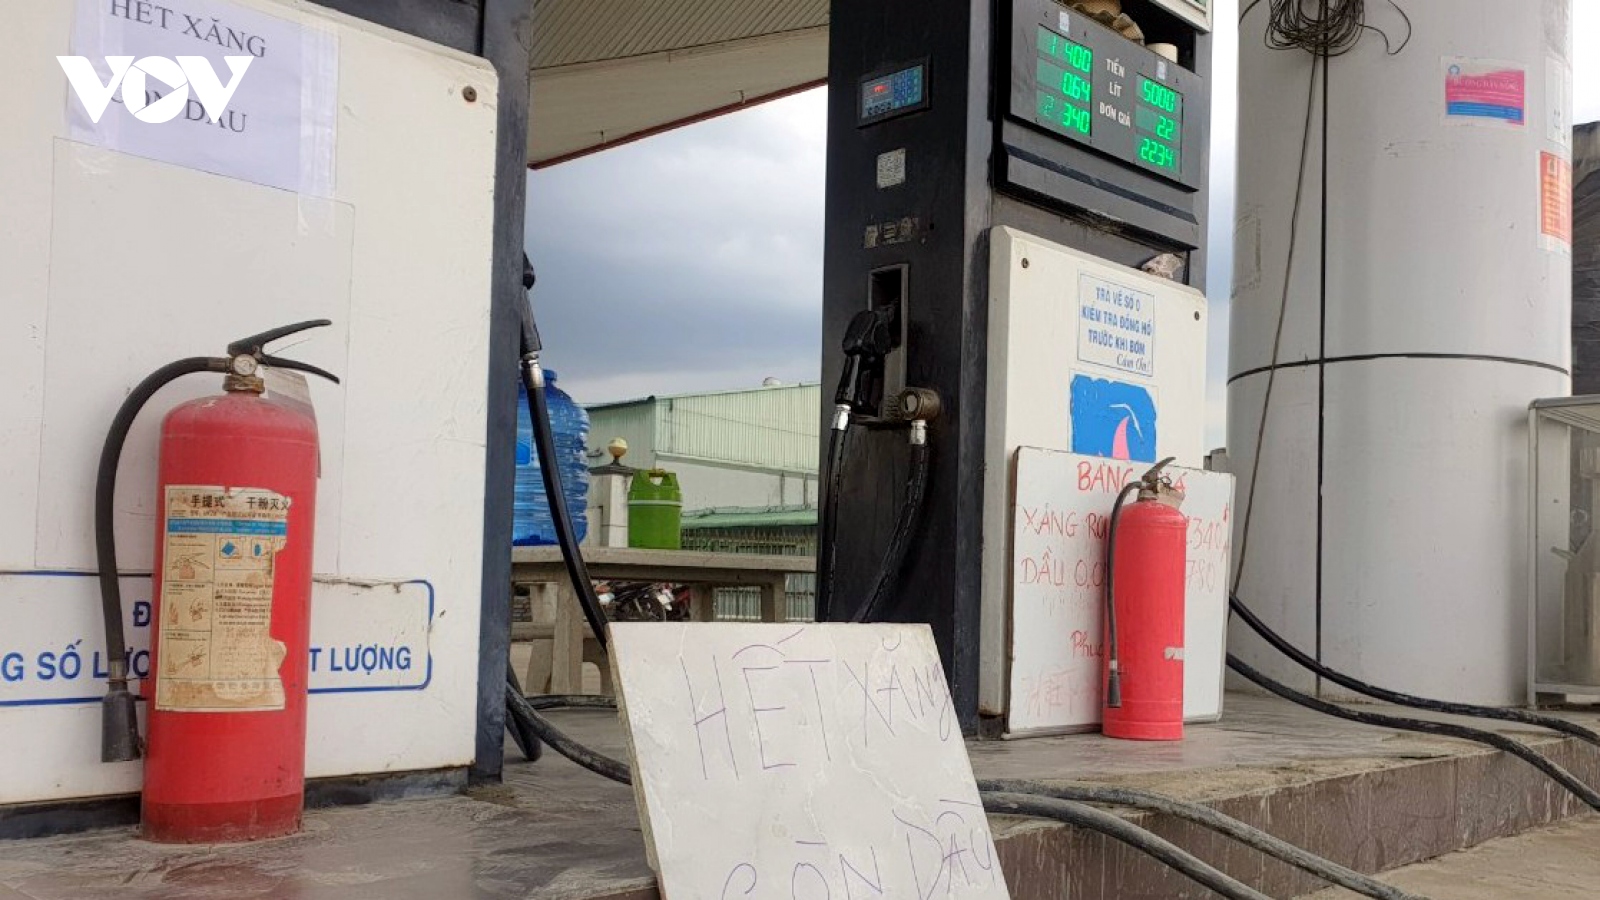 Đồng Tháp nghiêm cấm cửa hàng xăng dầu đóng cửa với lý do không chính đáng